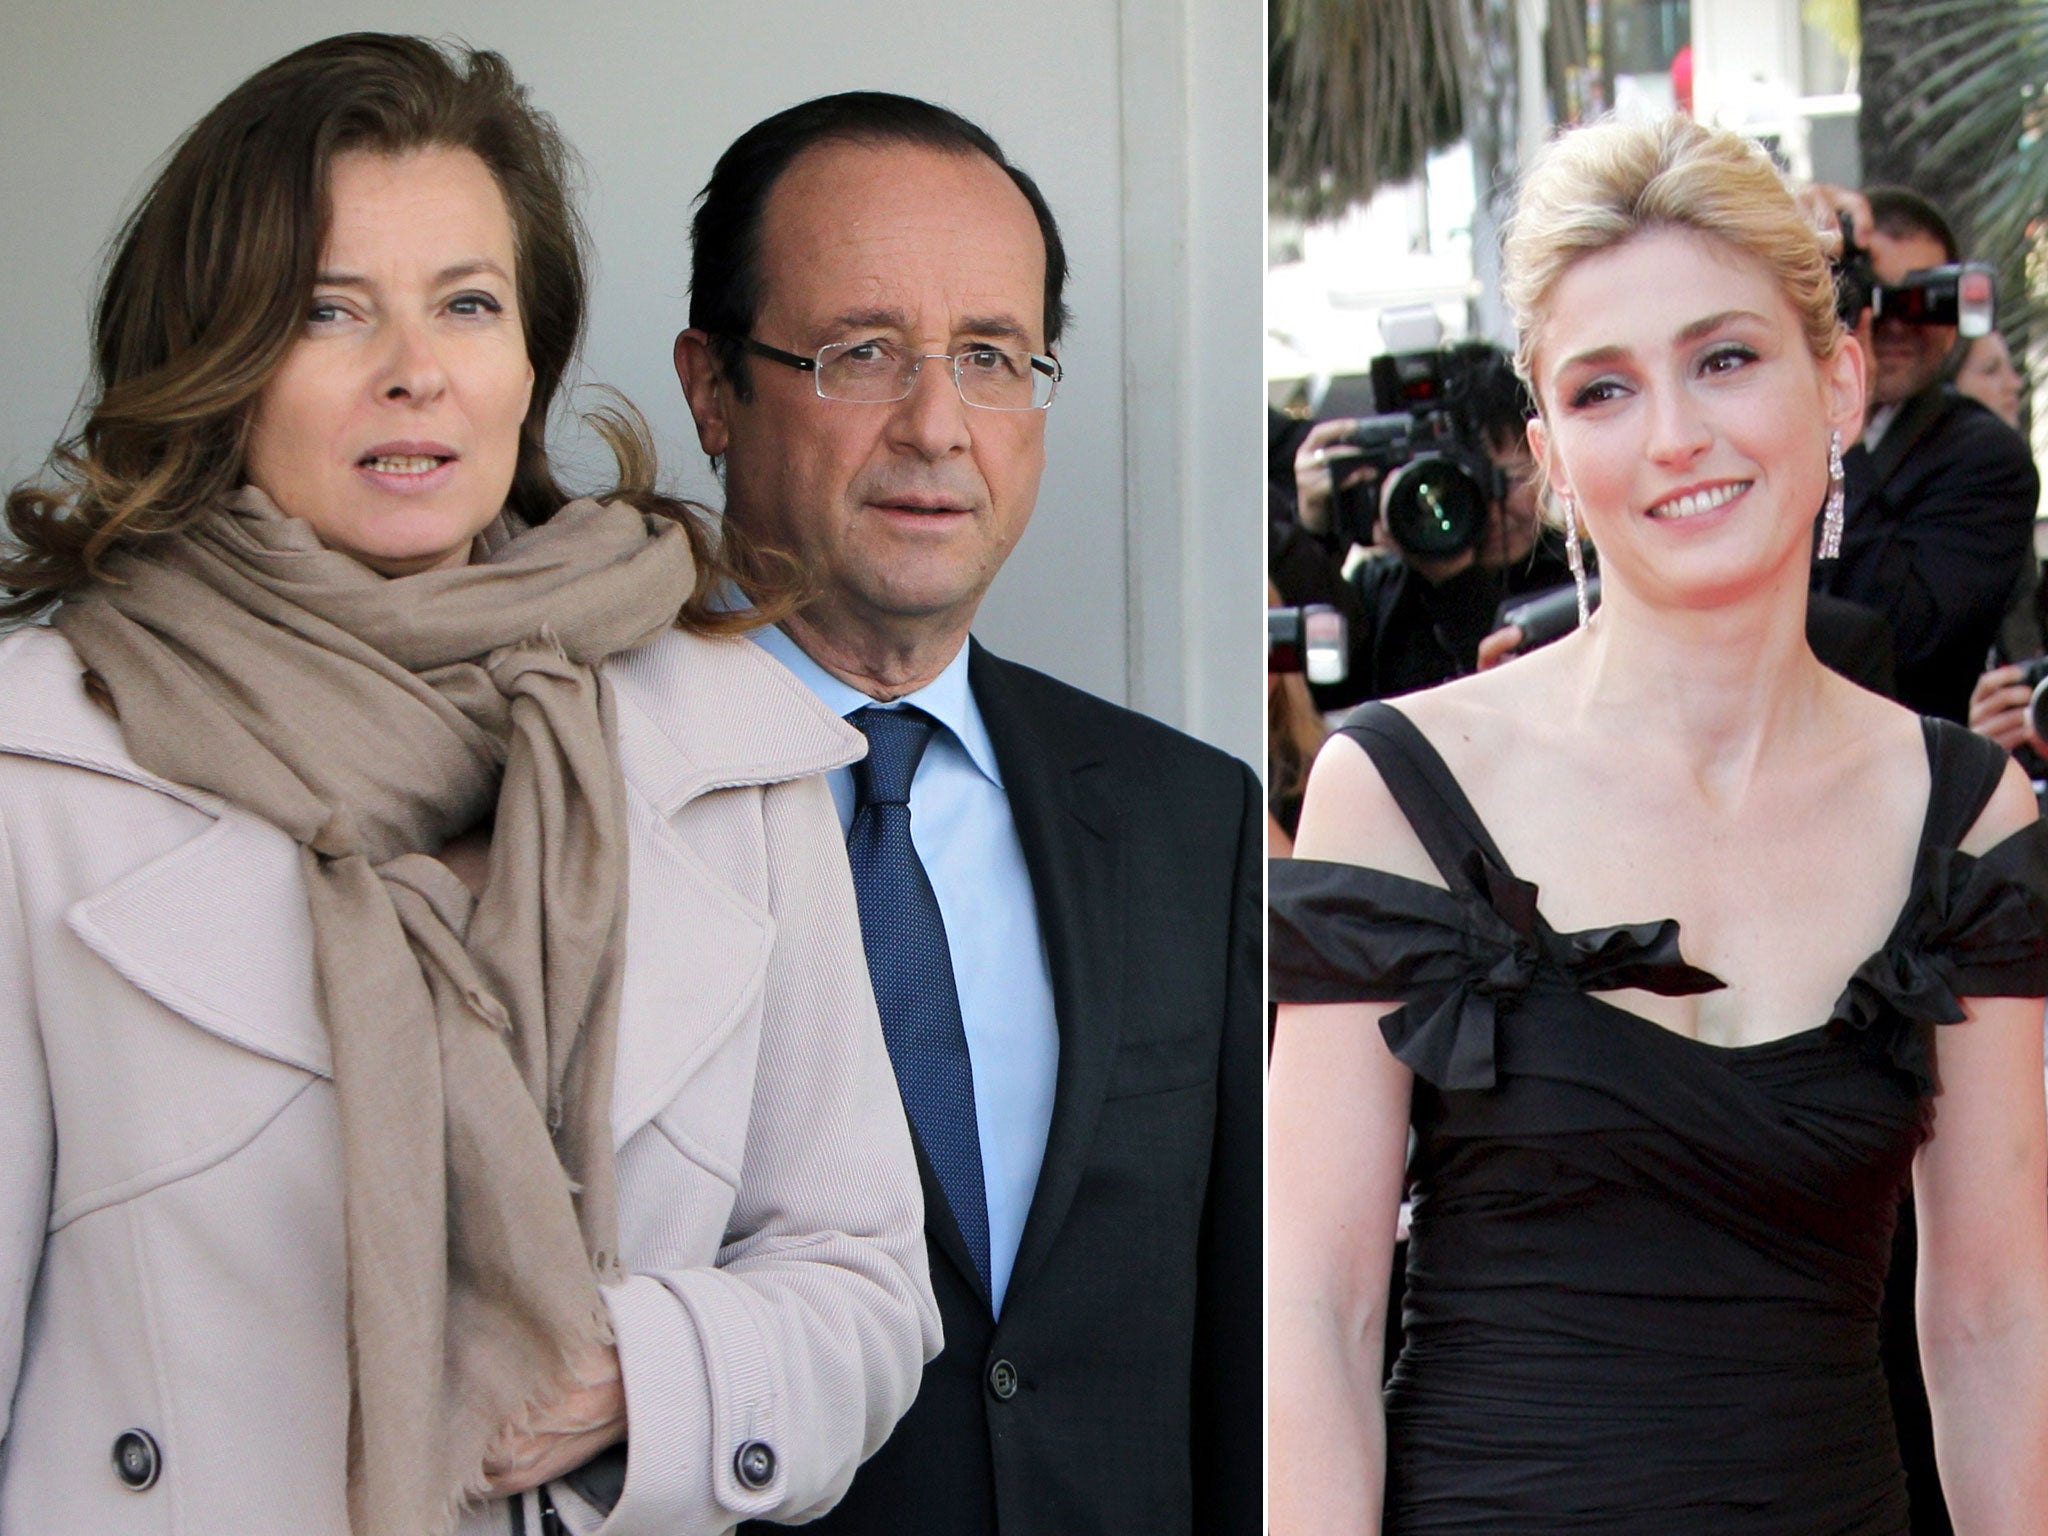 François Hollande with partner Valérie Trierweiler; Julie Gayet